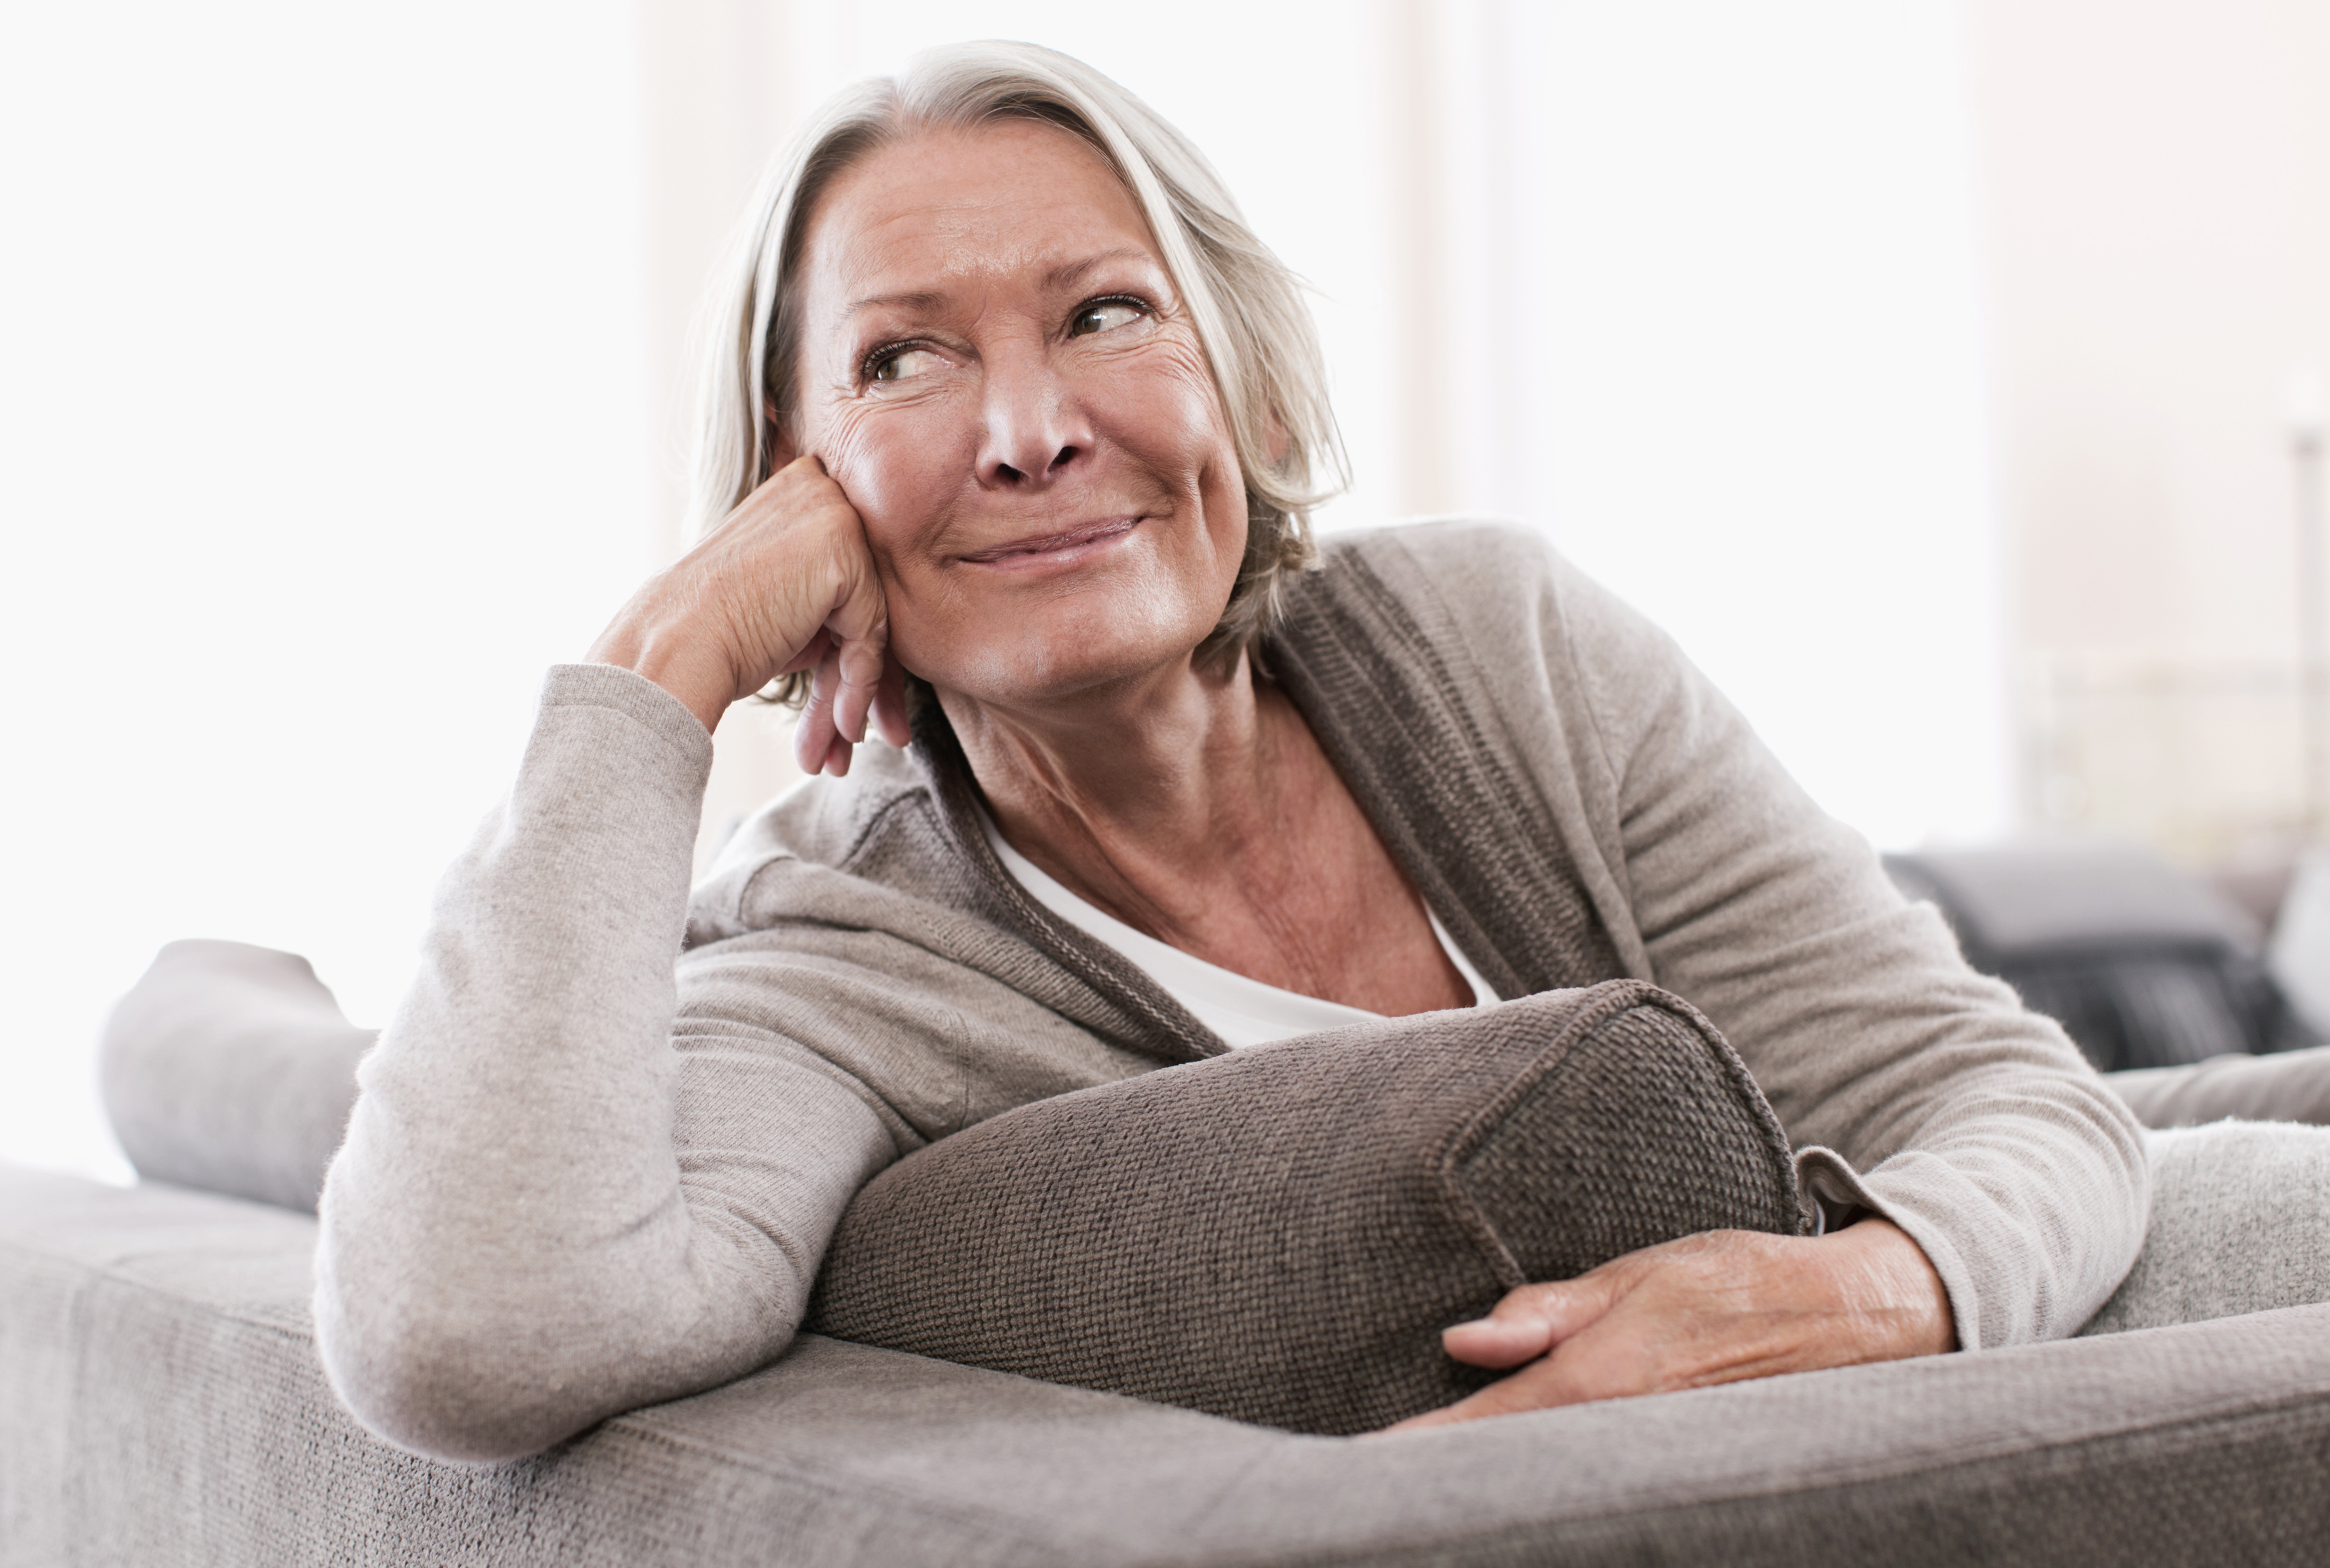 Une femme âgée regardant au loin, souriante | Source : Getty Images